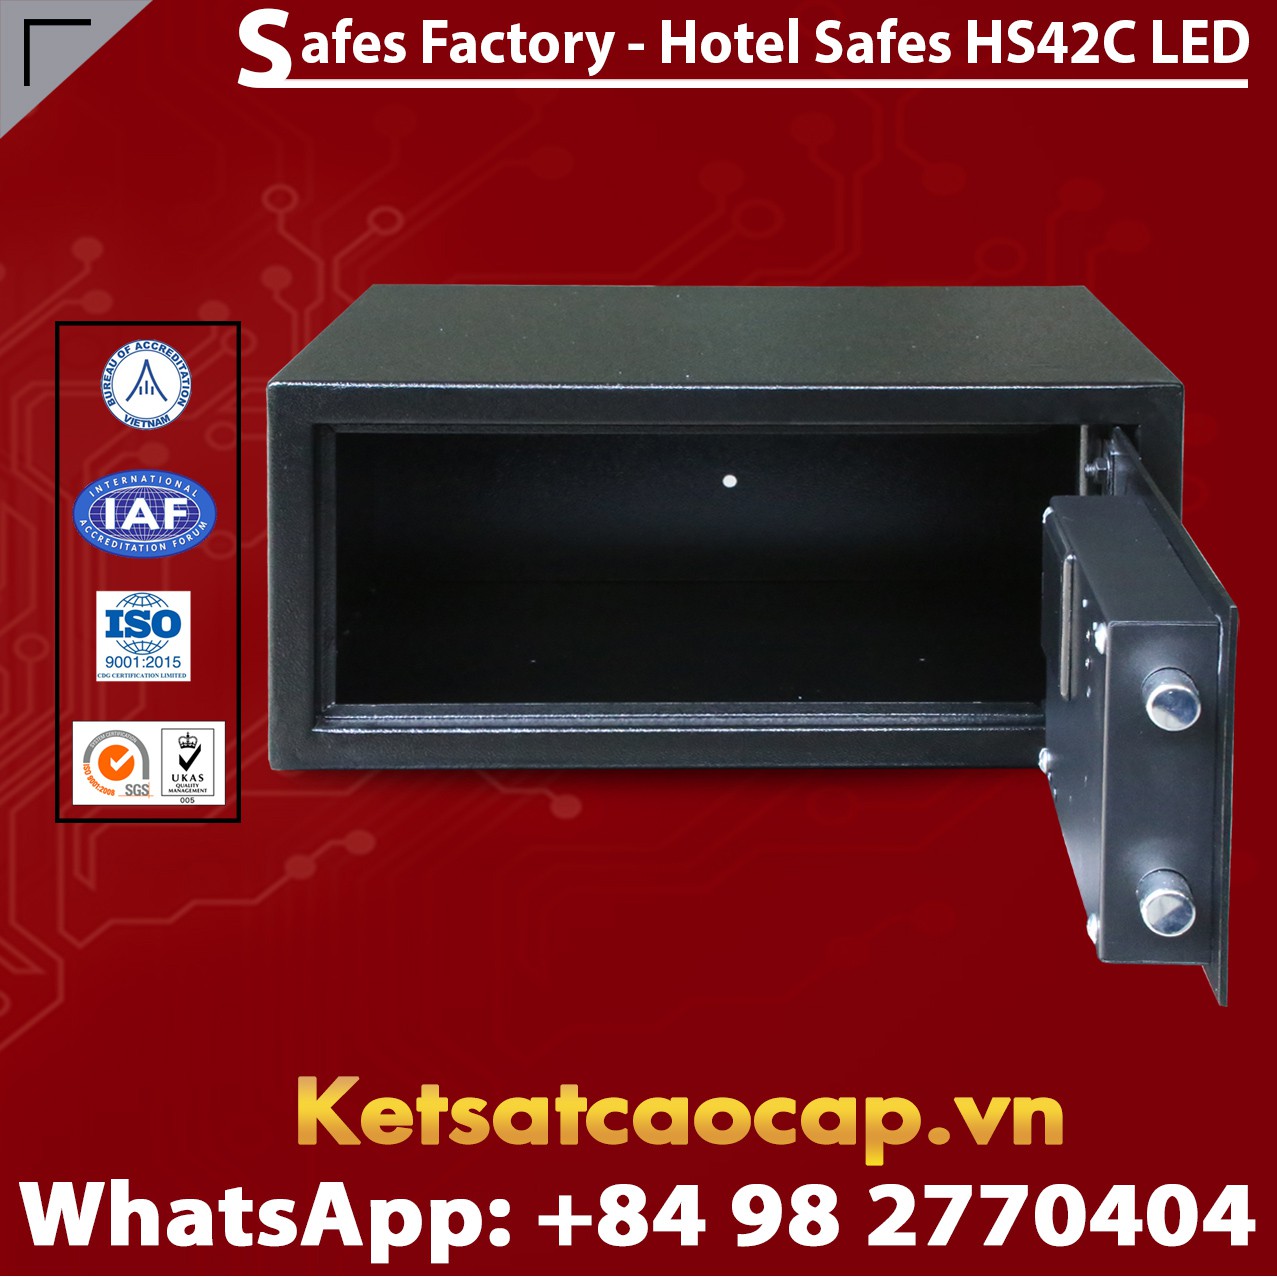 Portable Hotel Safes WELKO HS42 C LED